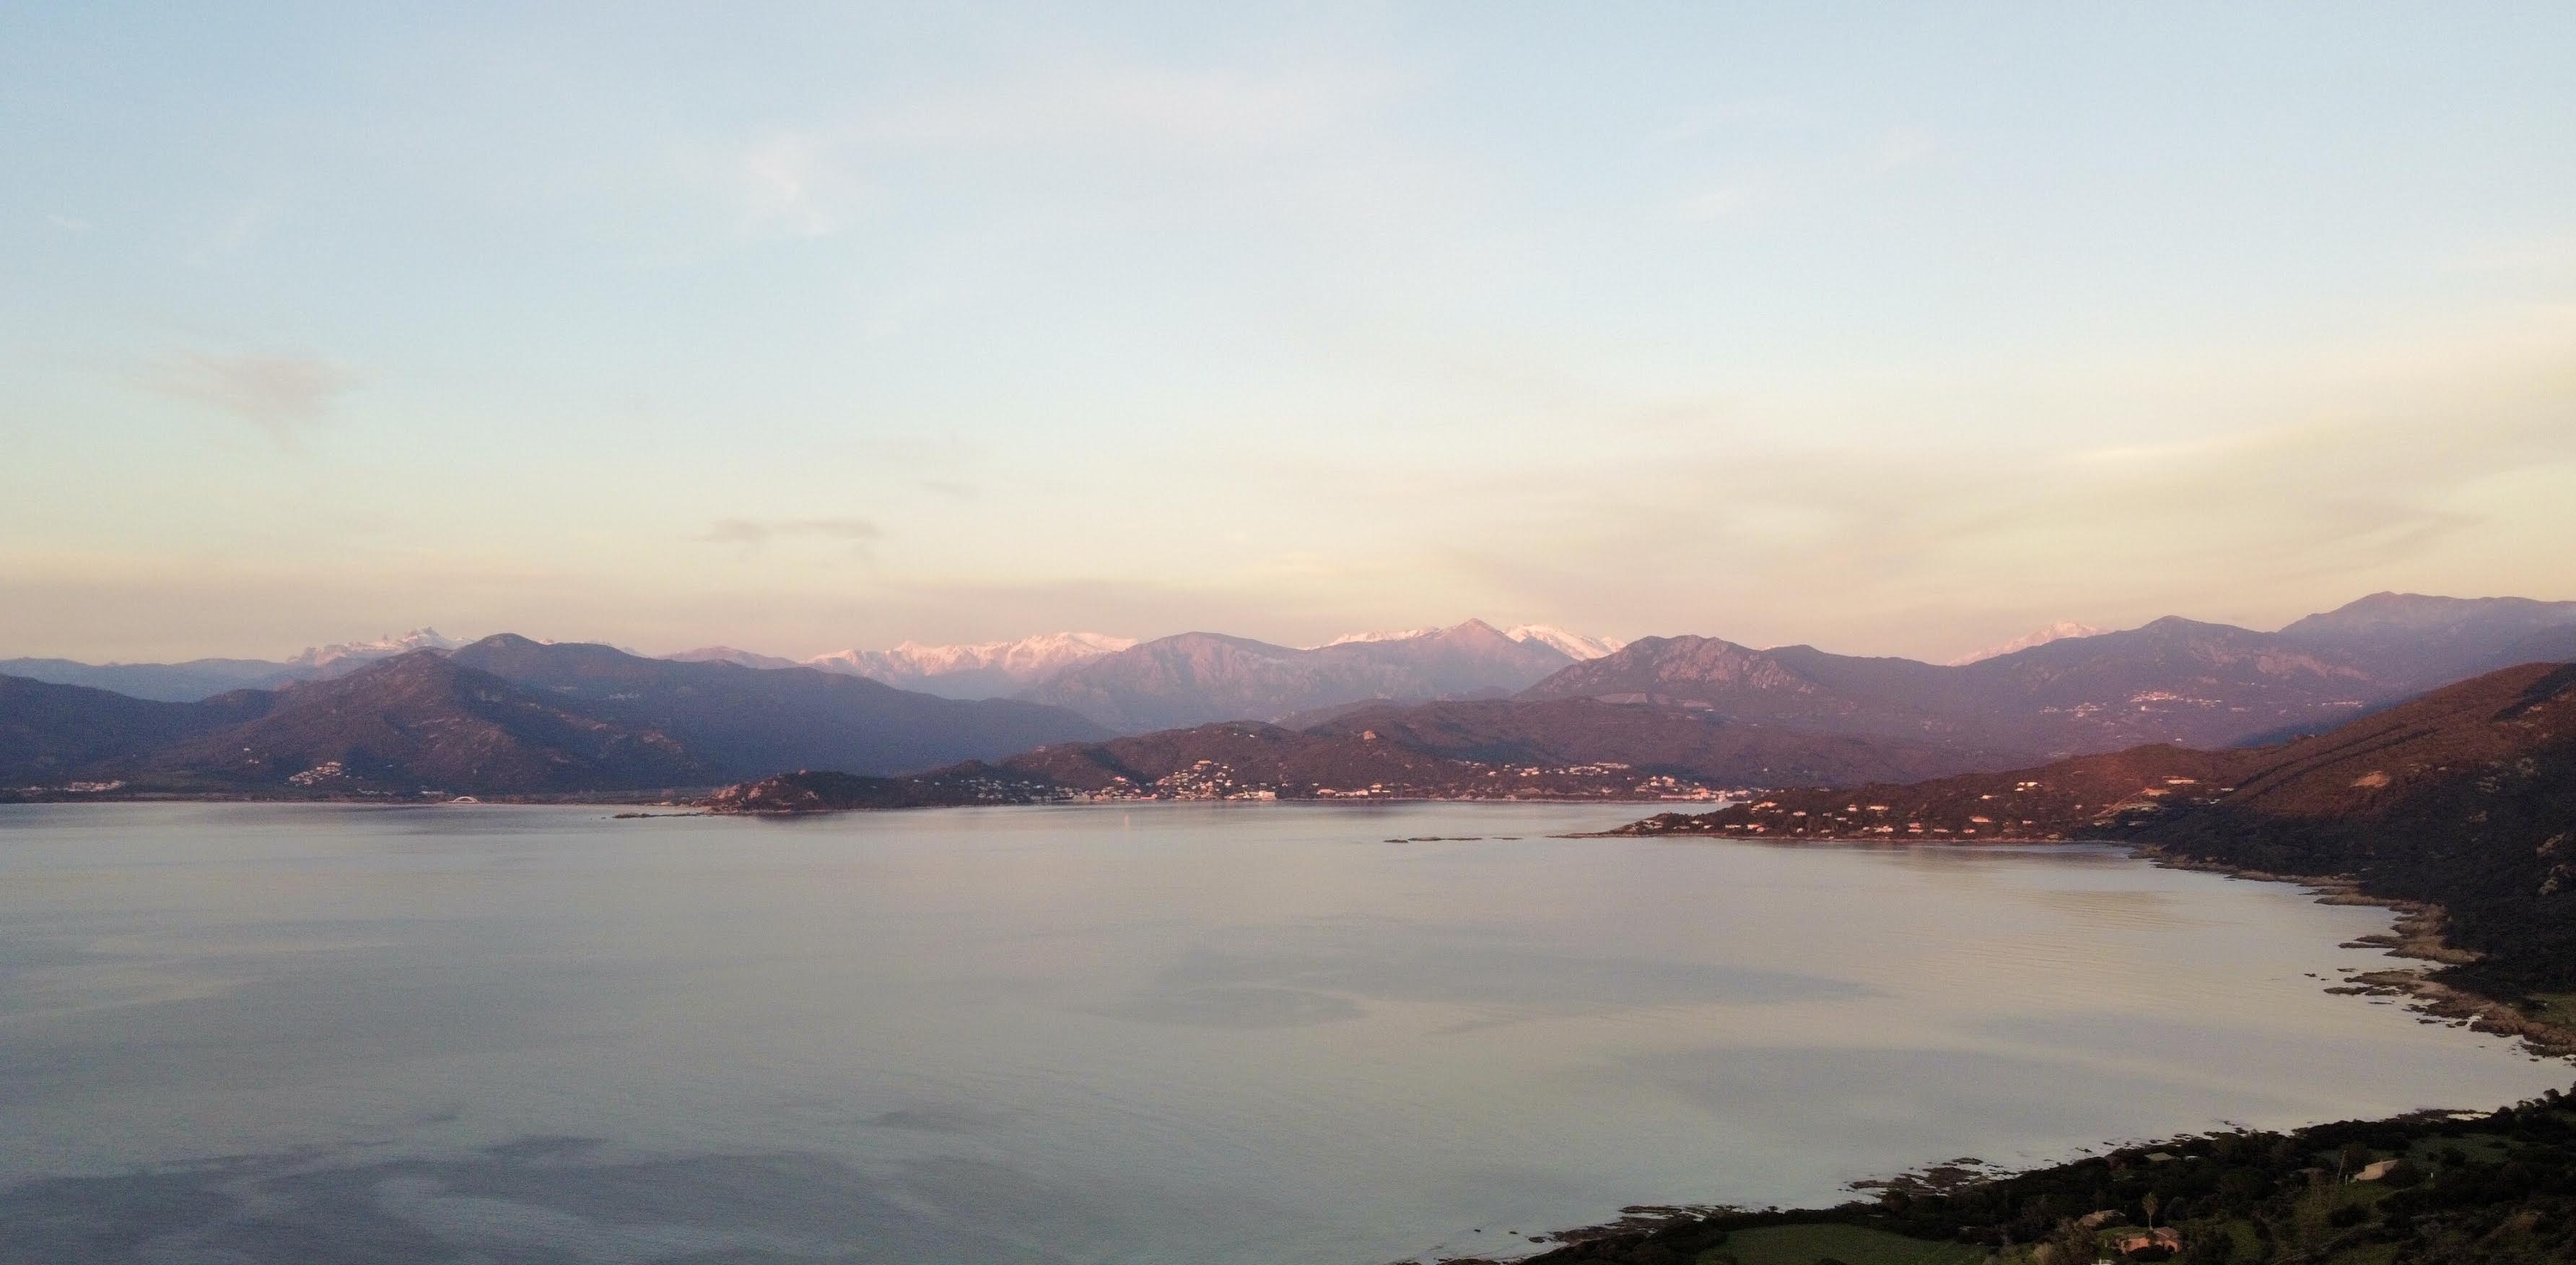 La route de Sagone vue depuis le drone de David Ventura survolant la côte de Calcatoggio